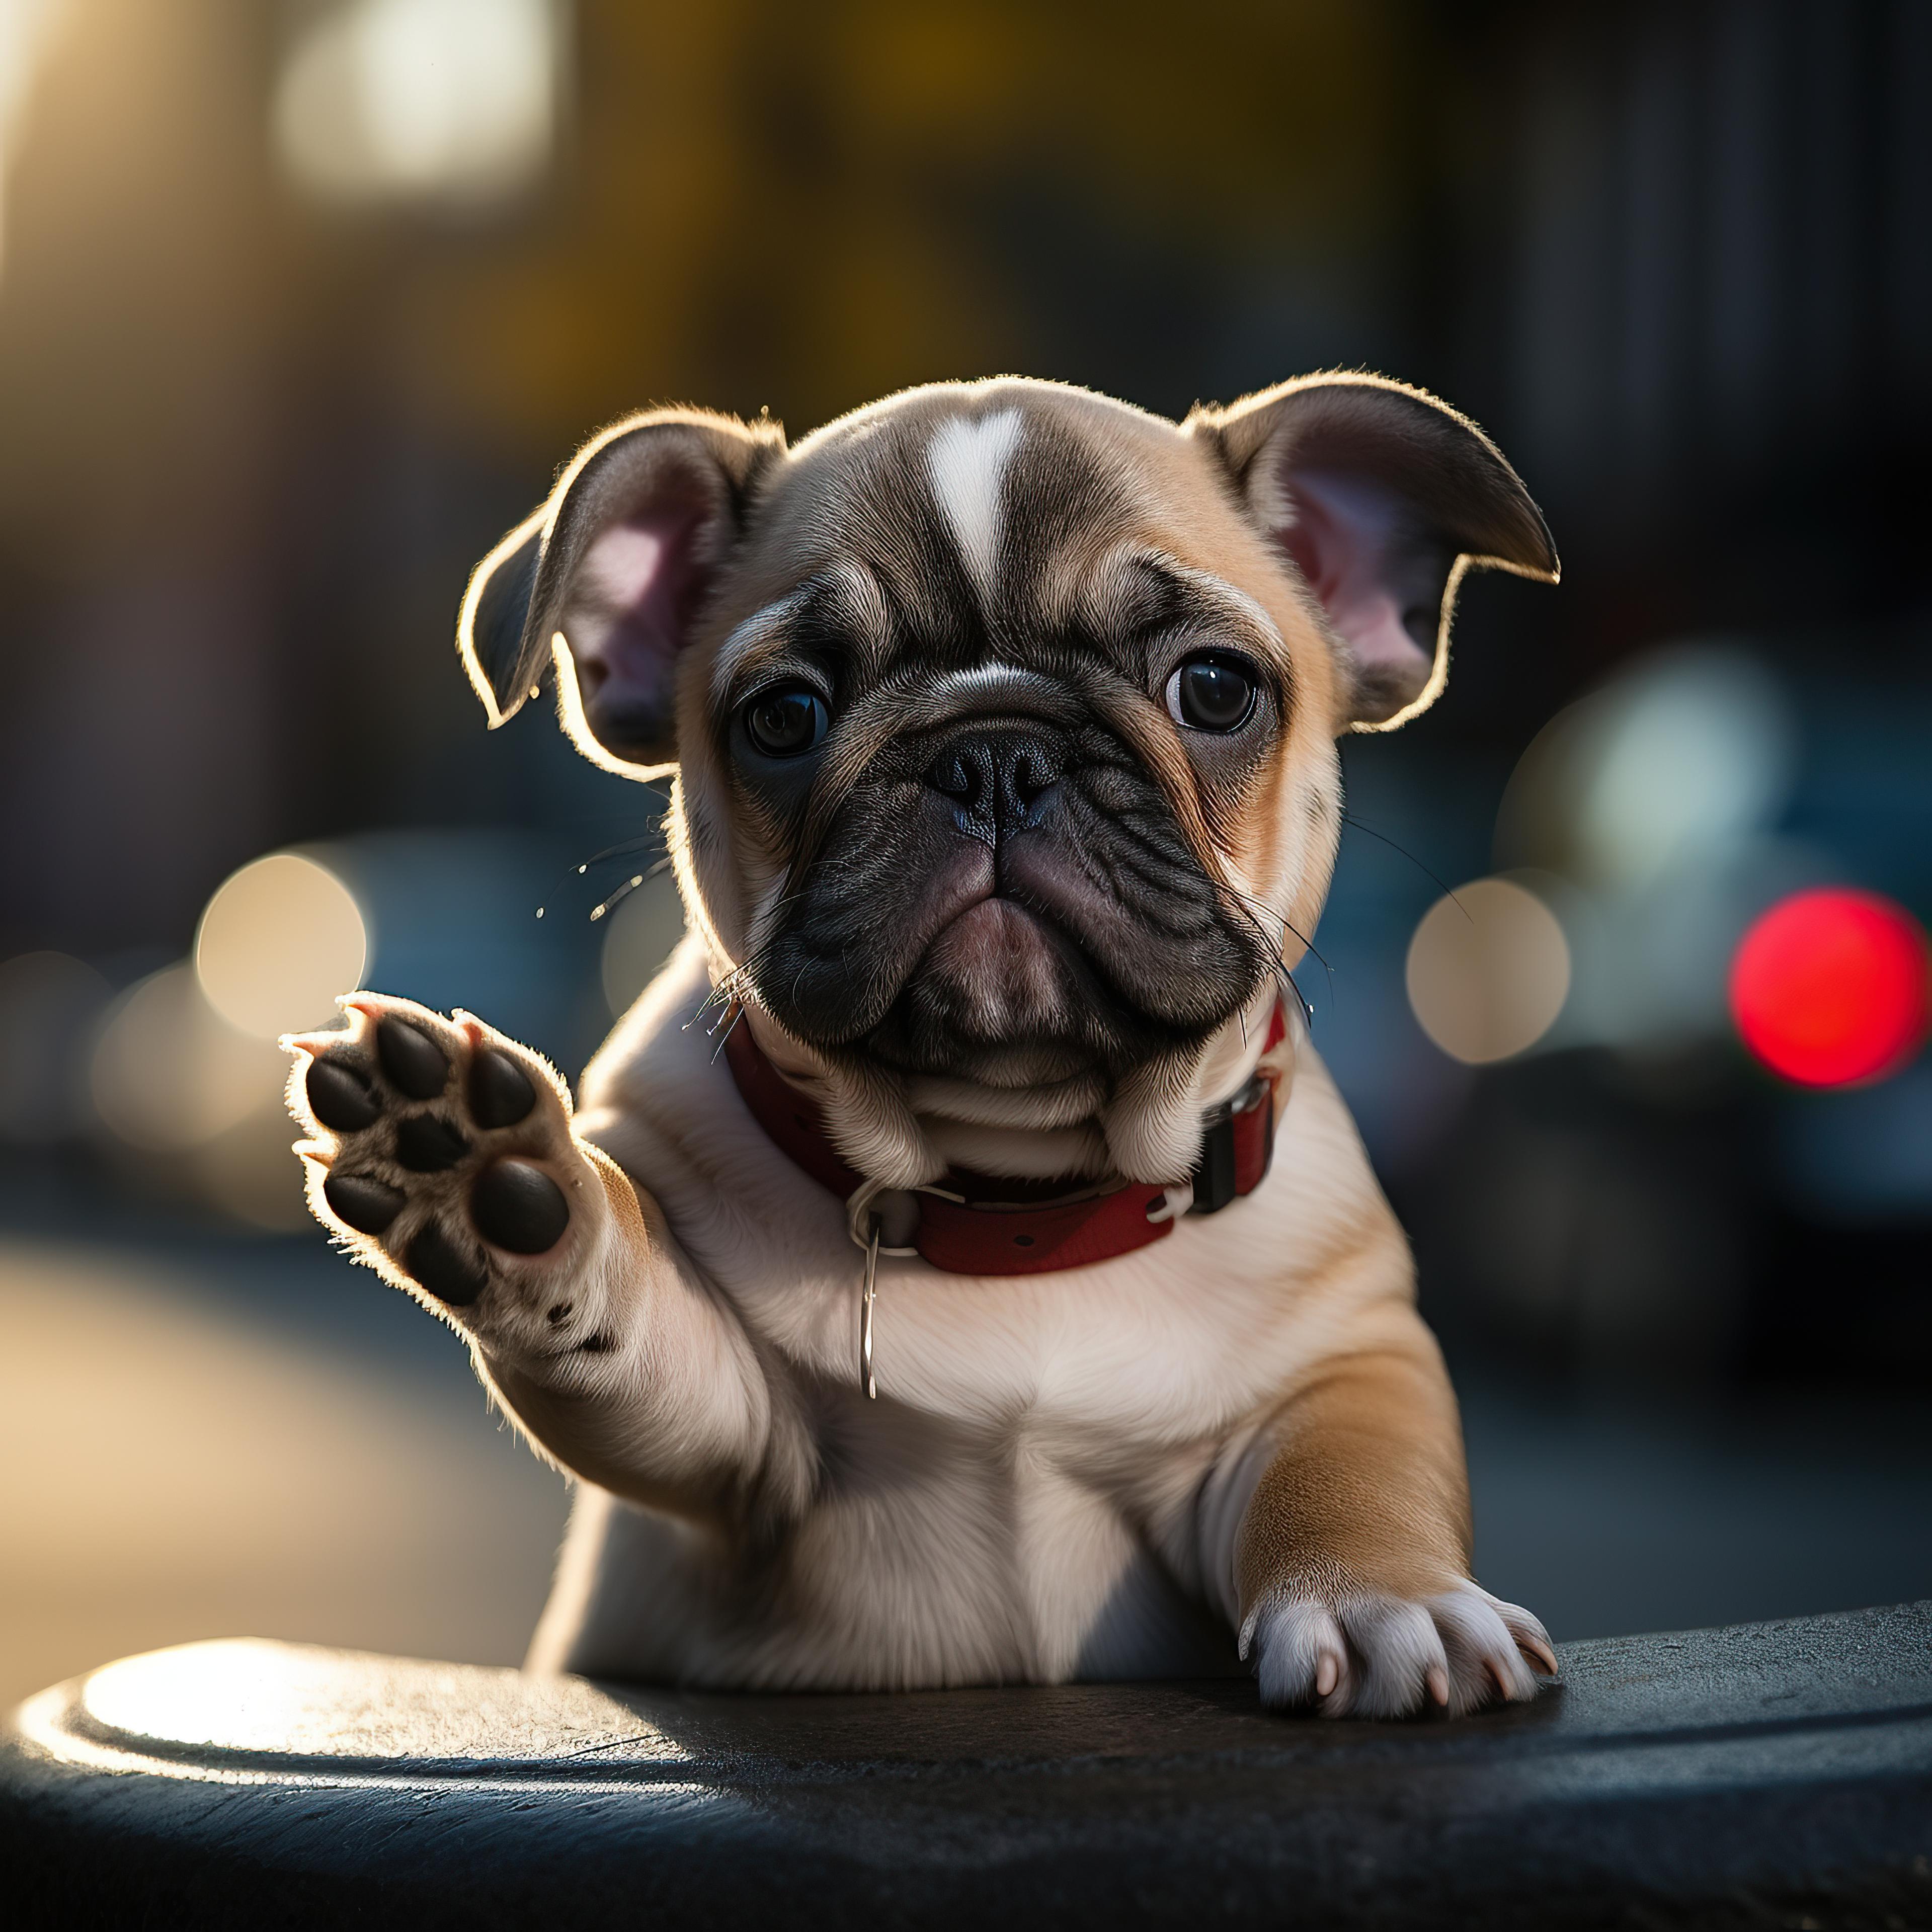 Puppy waving